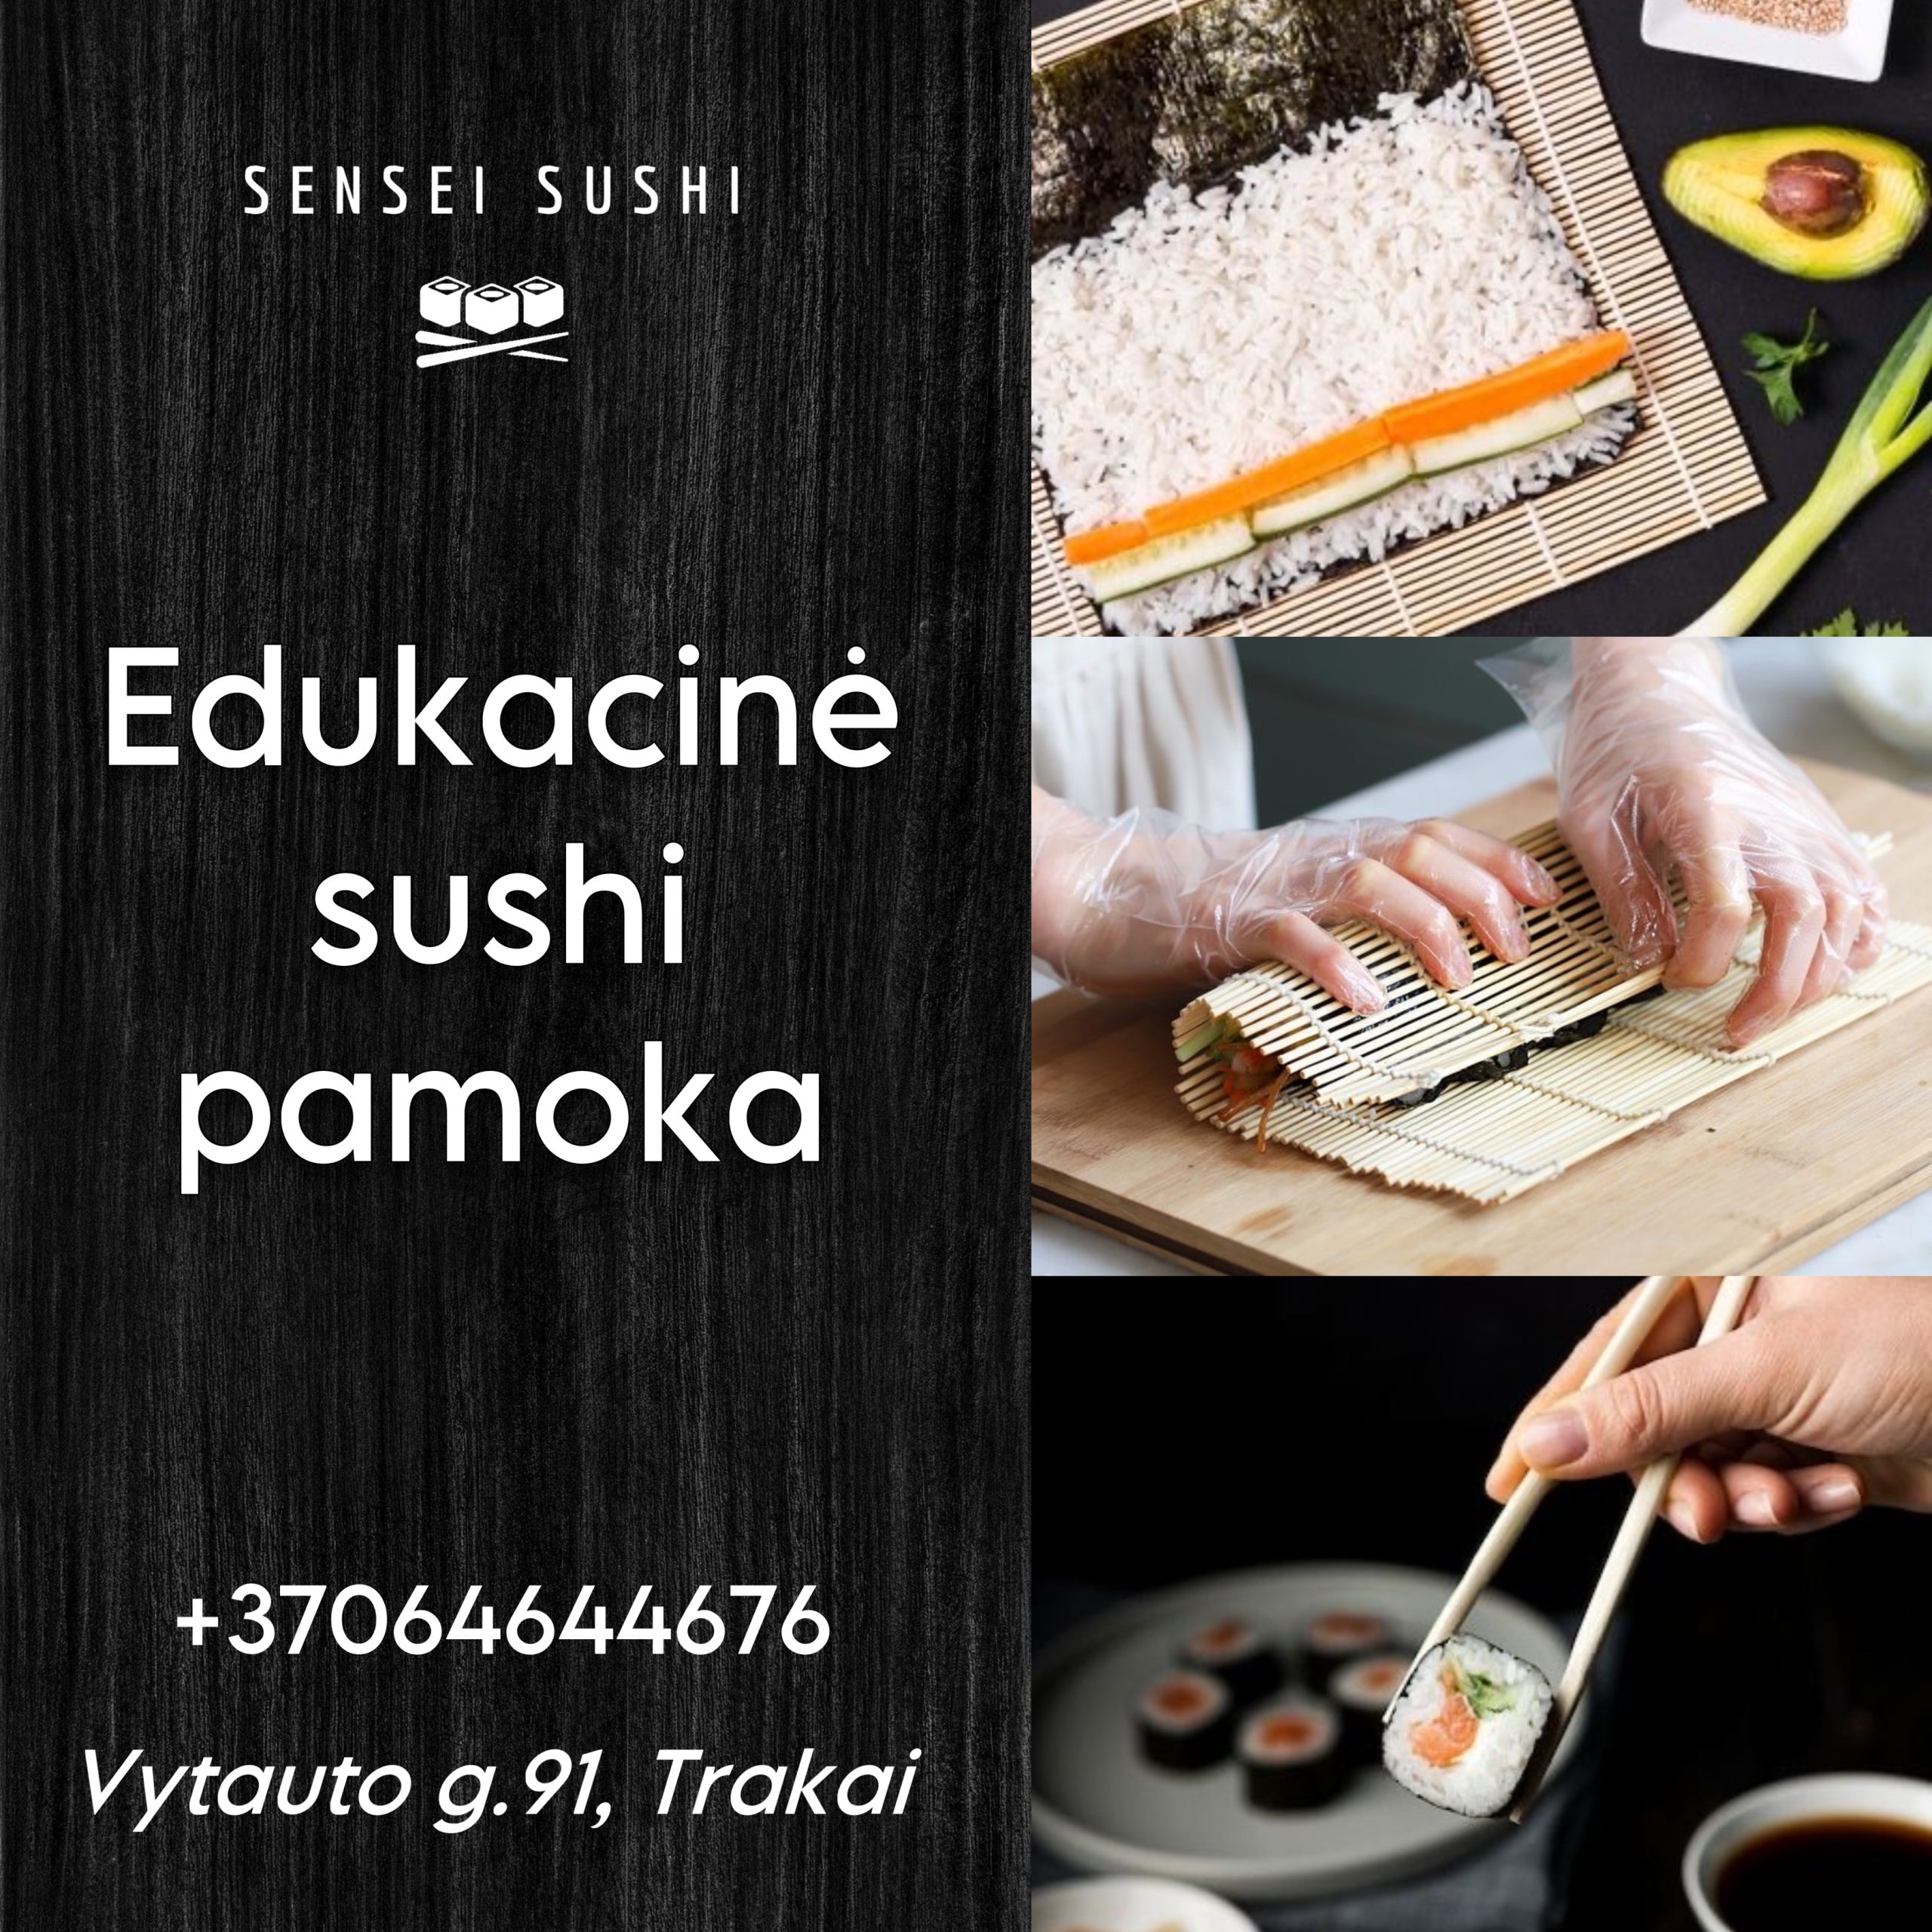 Edukacine sushi pamoka